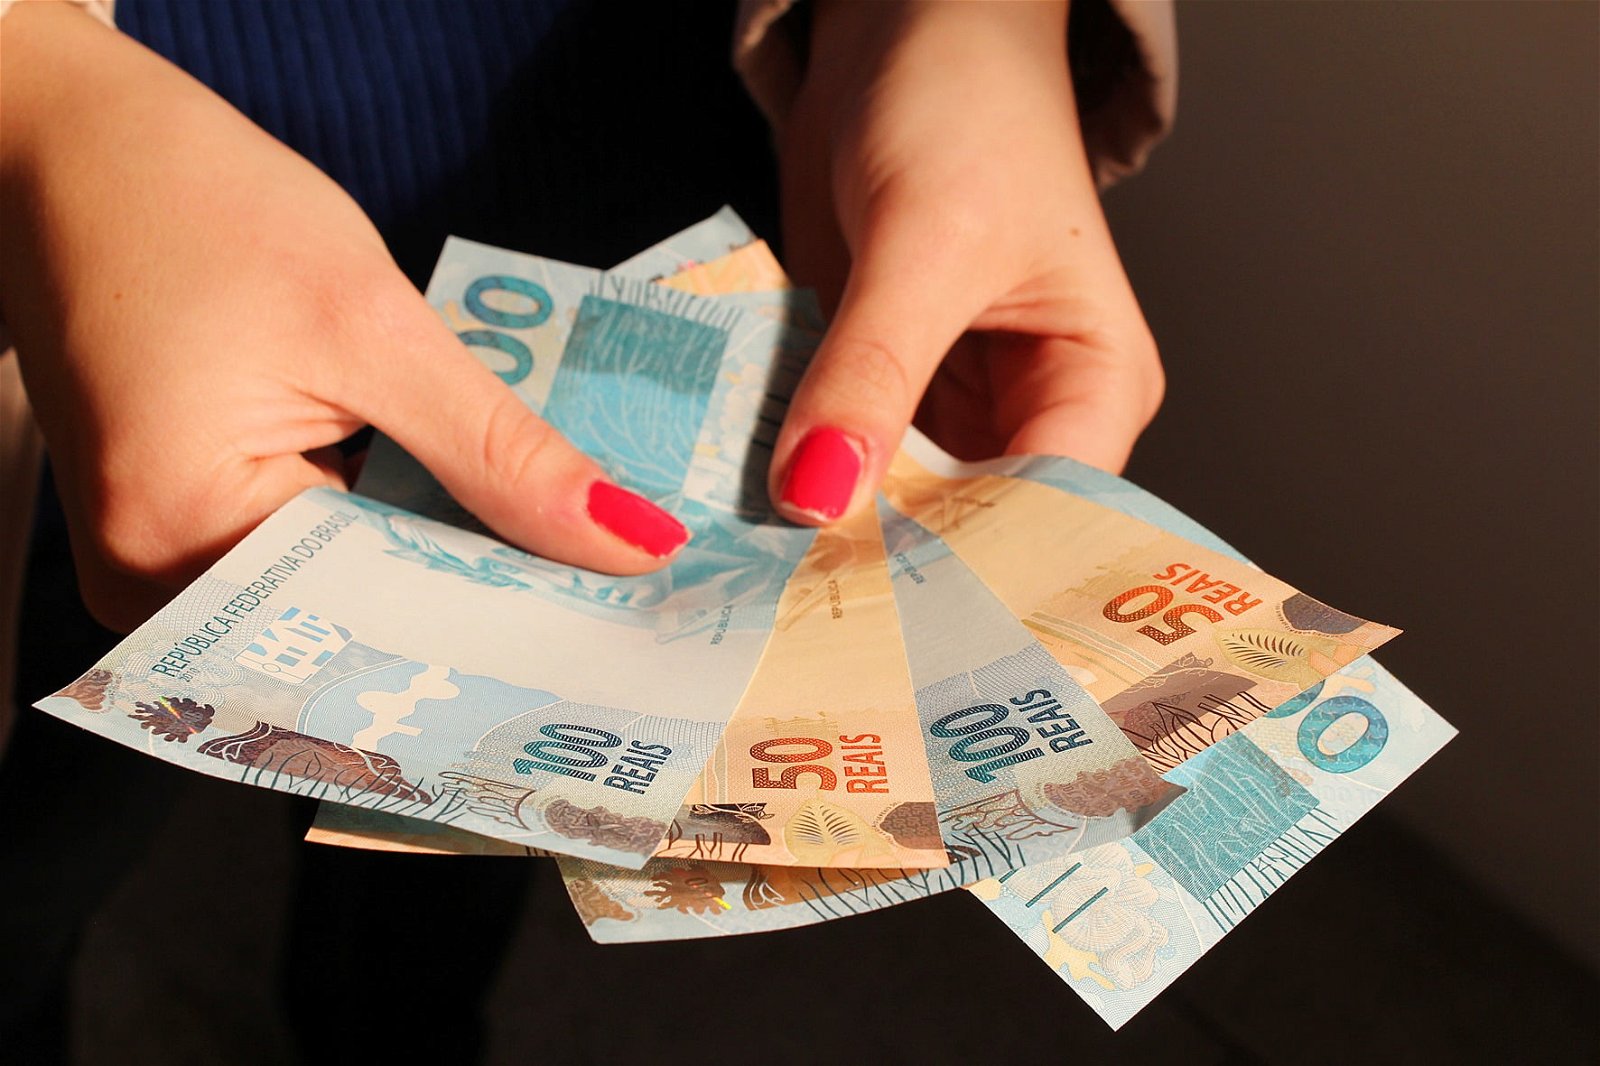 Mãos de uma pessoa branca, com unhas pintadas de vermelho, seguram cédulas de dinheiro.